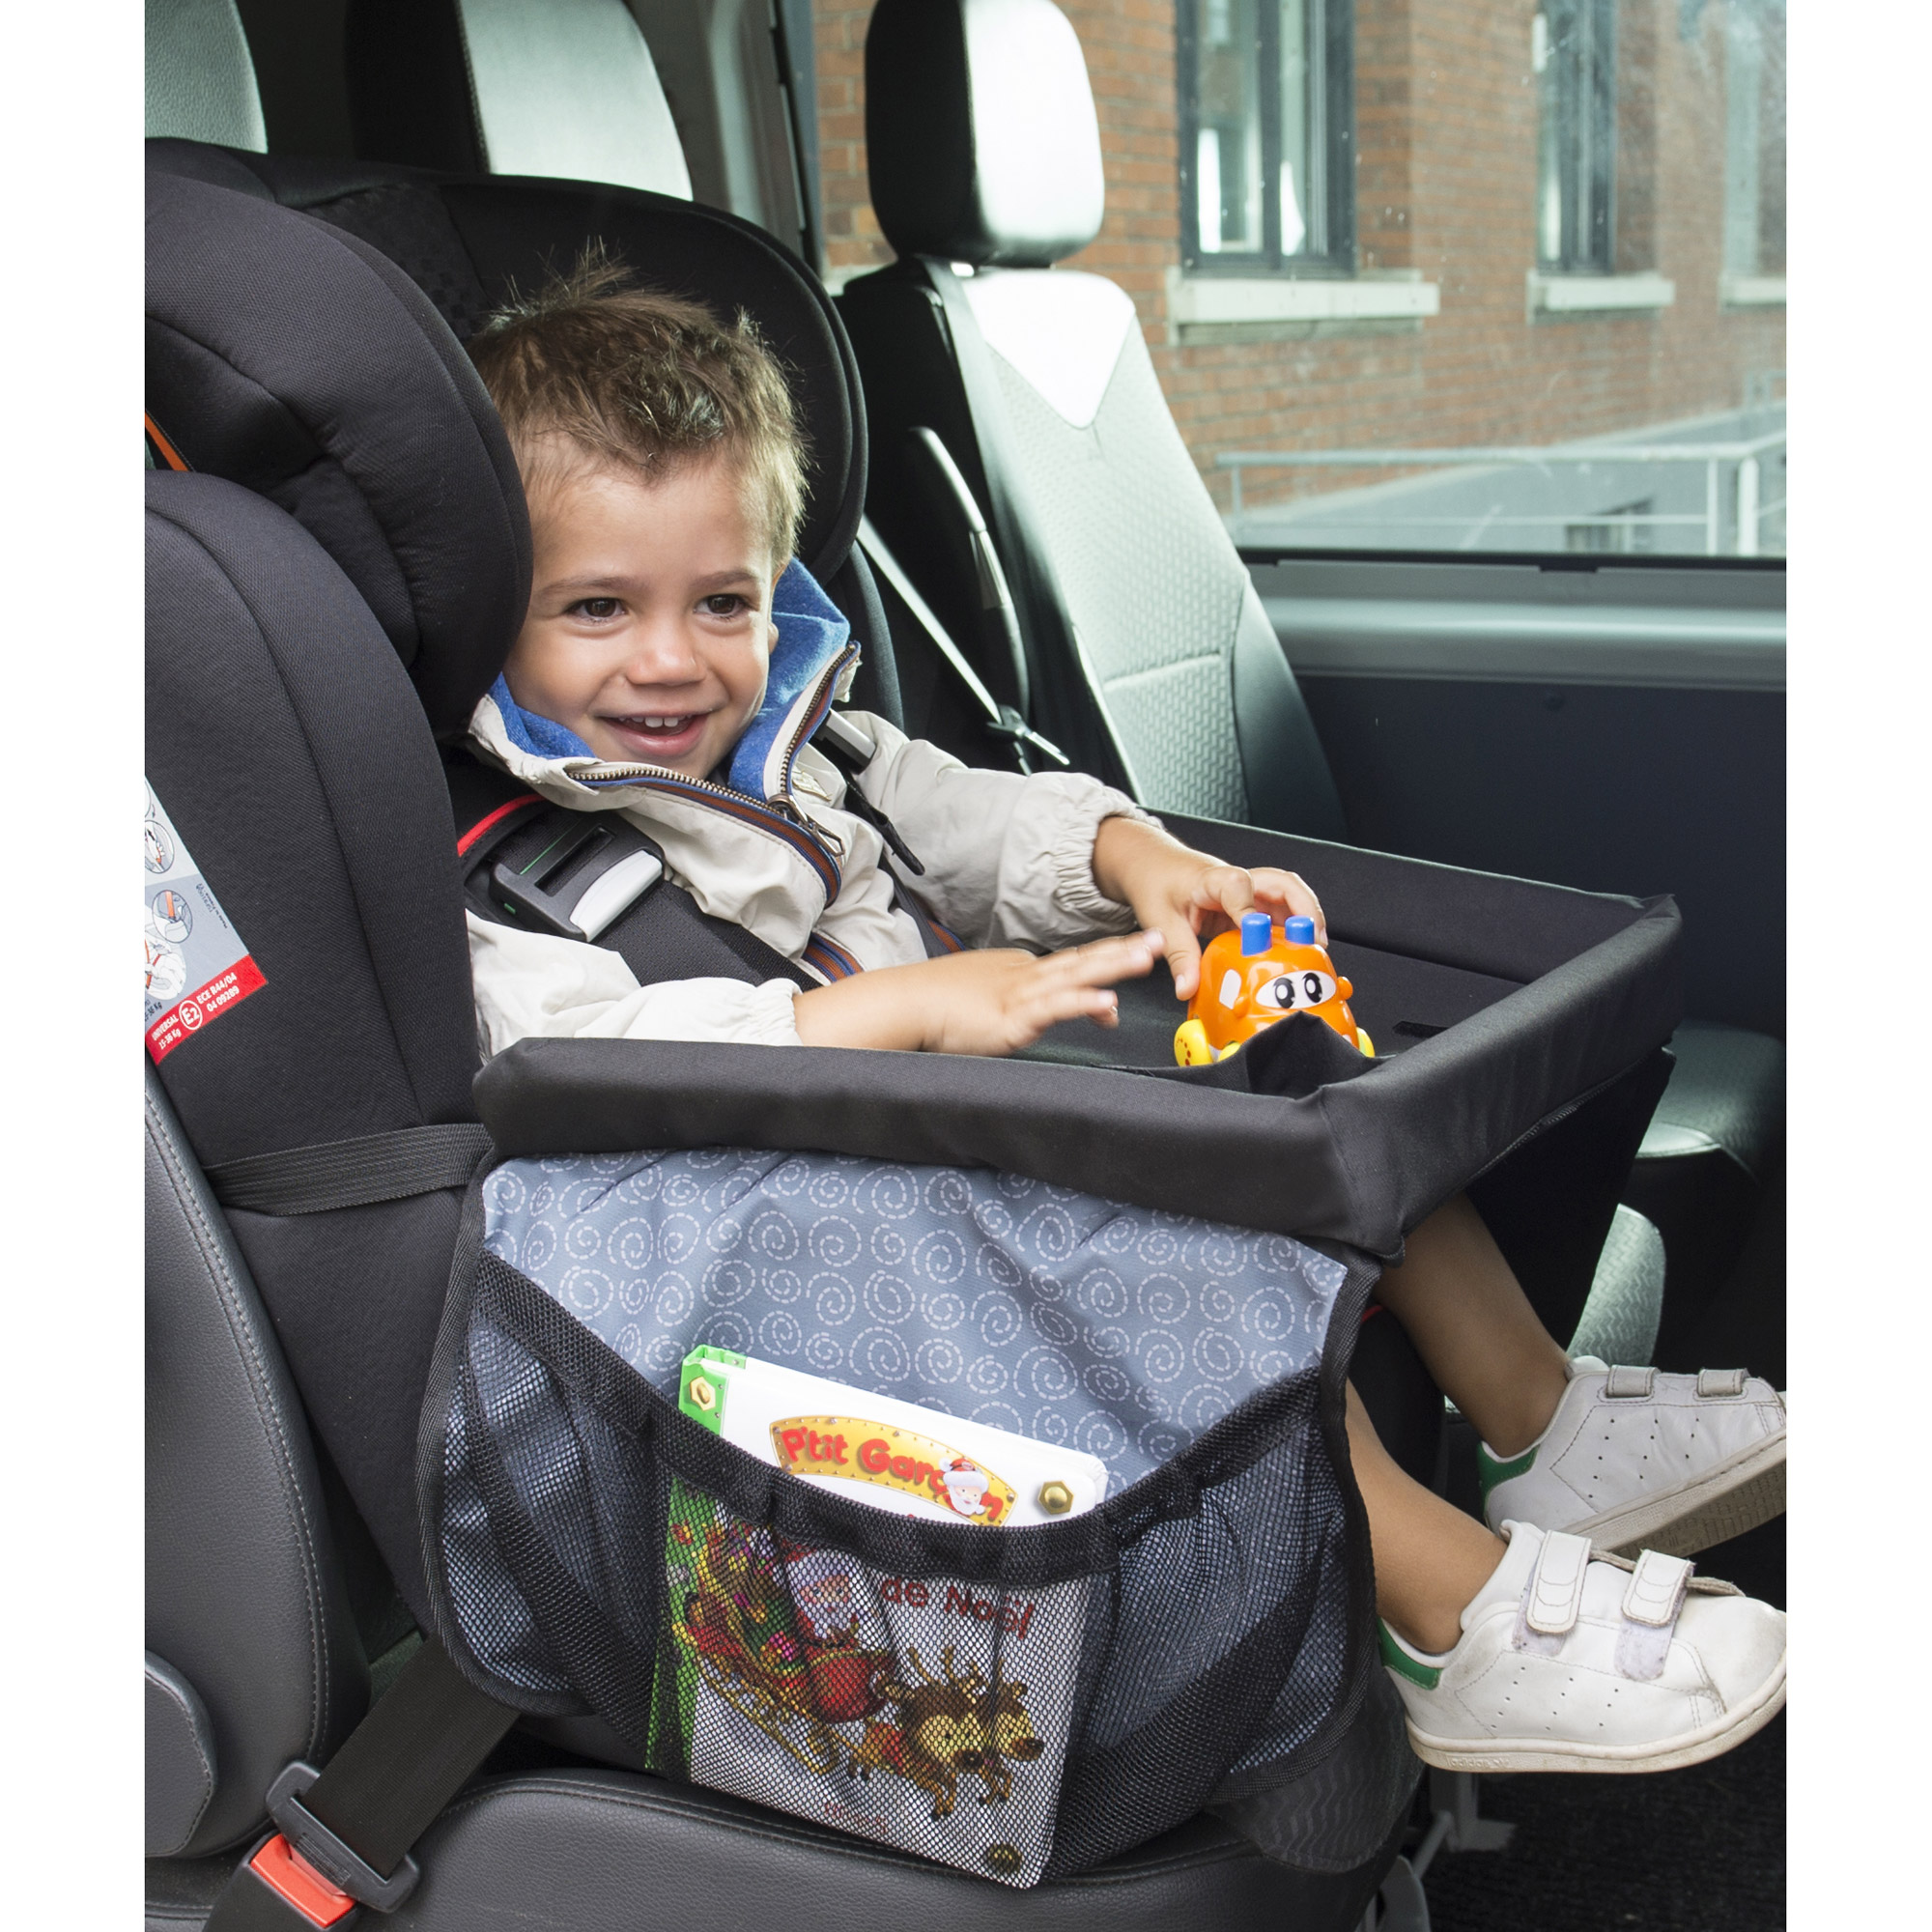 Tablette de voyage multi-activités enfant pour siège auto - Concept Extra